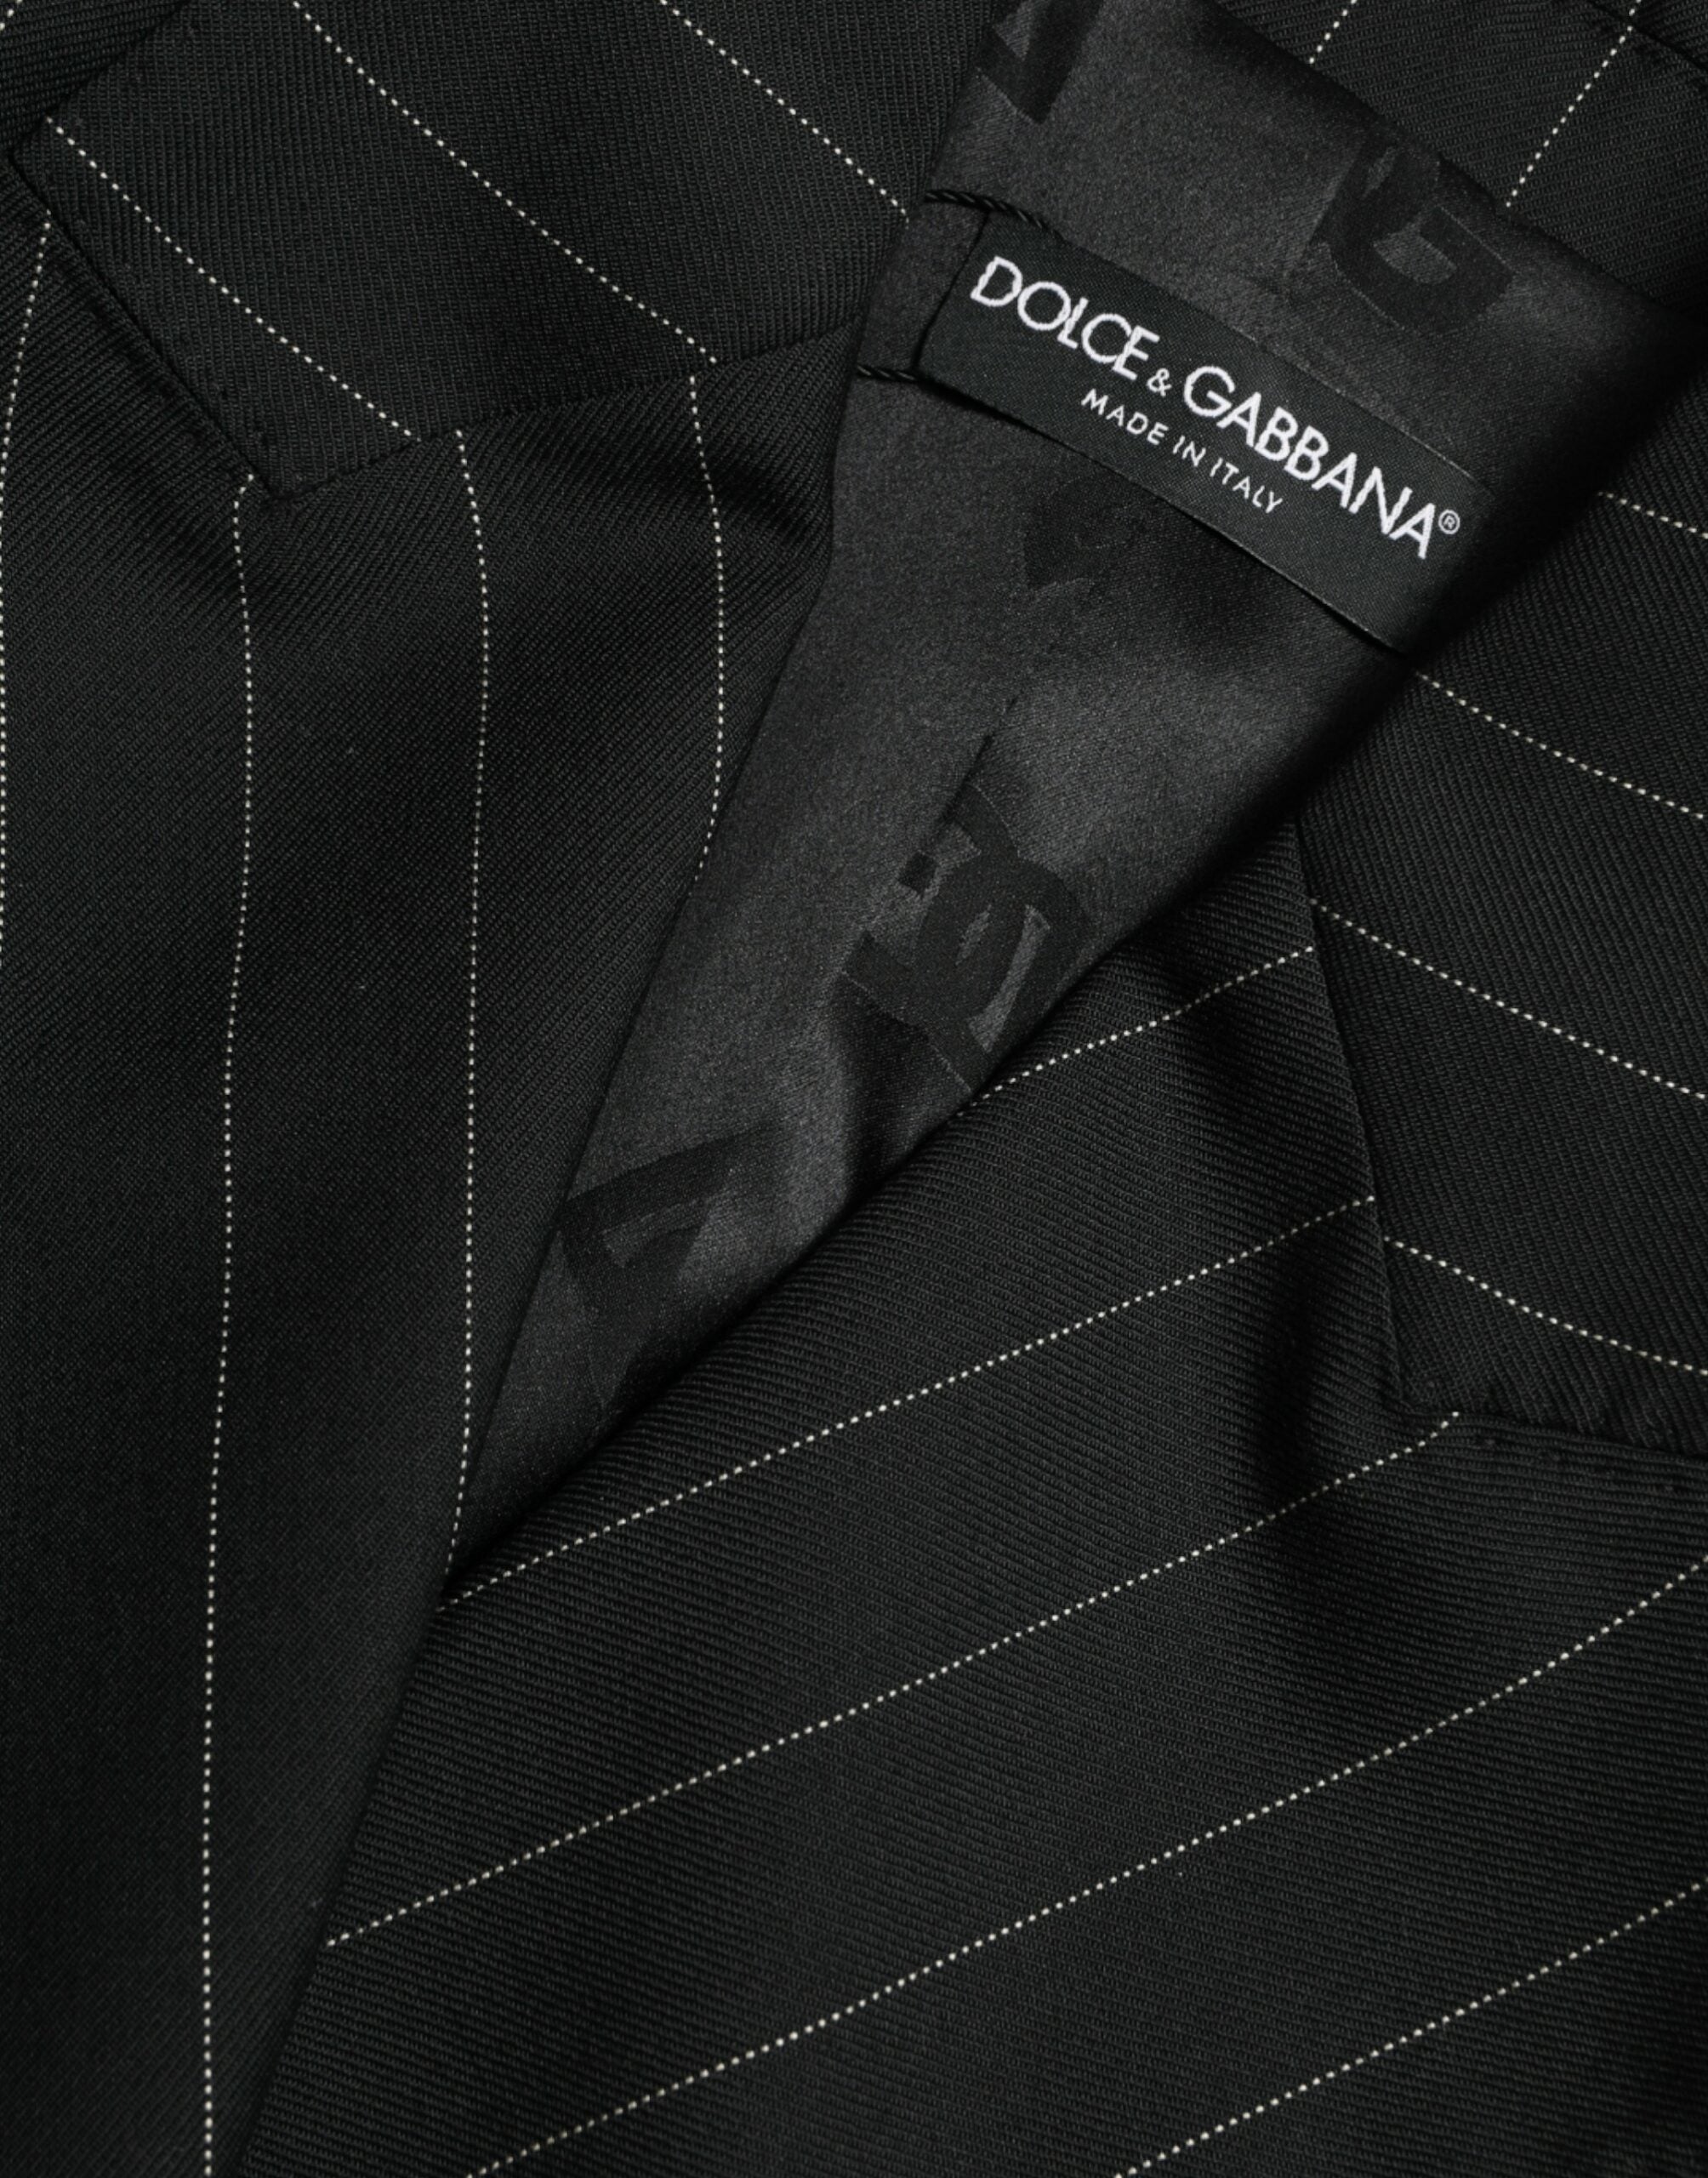 Dolce & Gabbana Chaqueta abrigo cruzado de lana a rayas negras